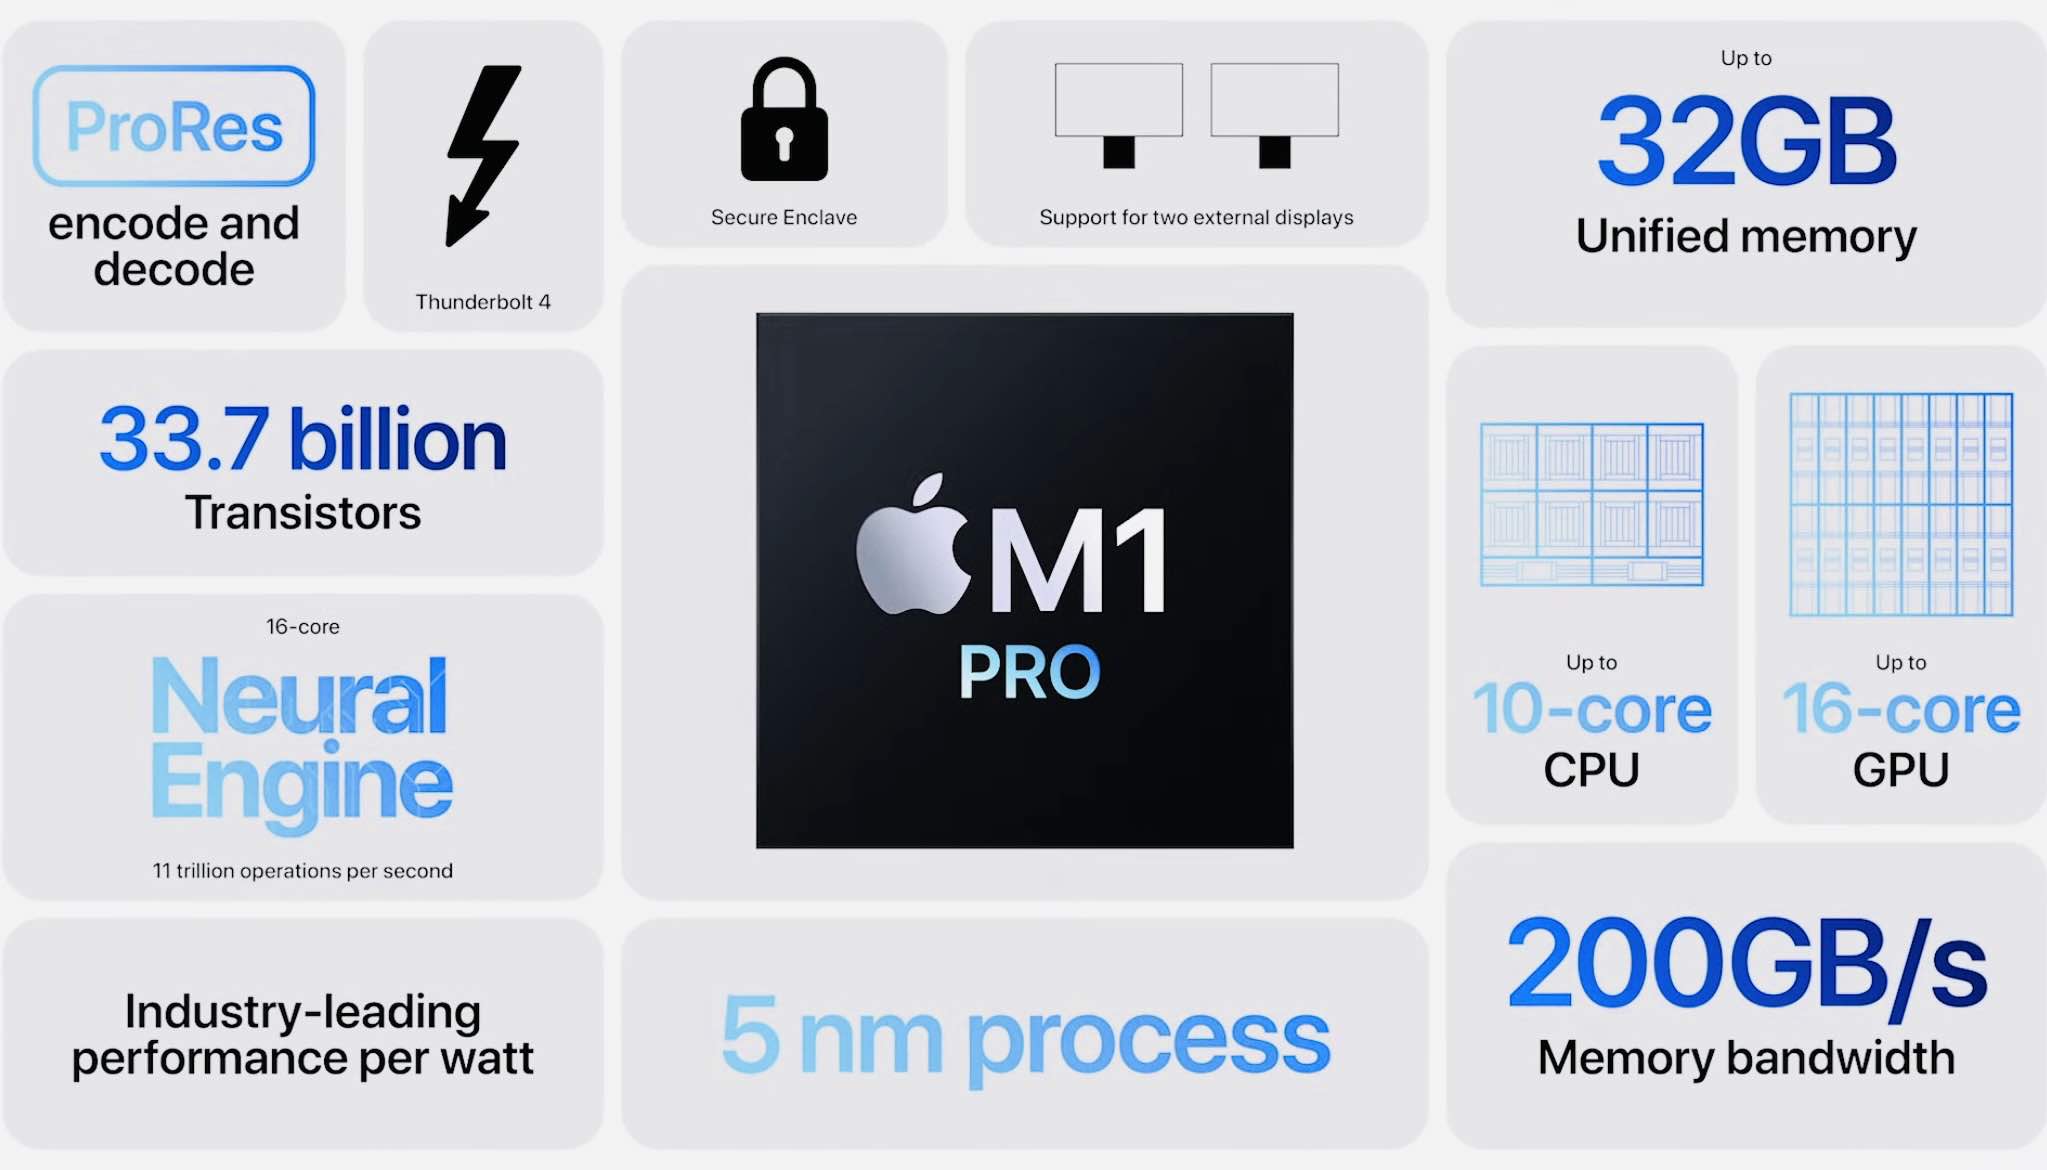 Nowe MacBooki Pro z czipami M1 Pro i M1 Max oficjalnie zaprezentowane ciekawostki specyfikacja macbook pro 2021, MacBook Pro 2021, cena w polsce, cena 14 cali macbook pro, 16-calowy macbook pro, 16 cali macbook pro, 14 calowy macbook pro  Zgodnie z oczekiwaniami wczoraj, Apple zaprezentowało światu nowe 14-calowe i 16-calowe MacBooki Pro. Laptopy mają nowe czipy, wyświetlacz 120Hz i zmieniony wygląd. M1Pro